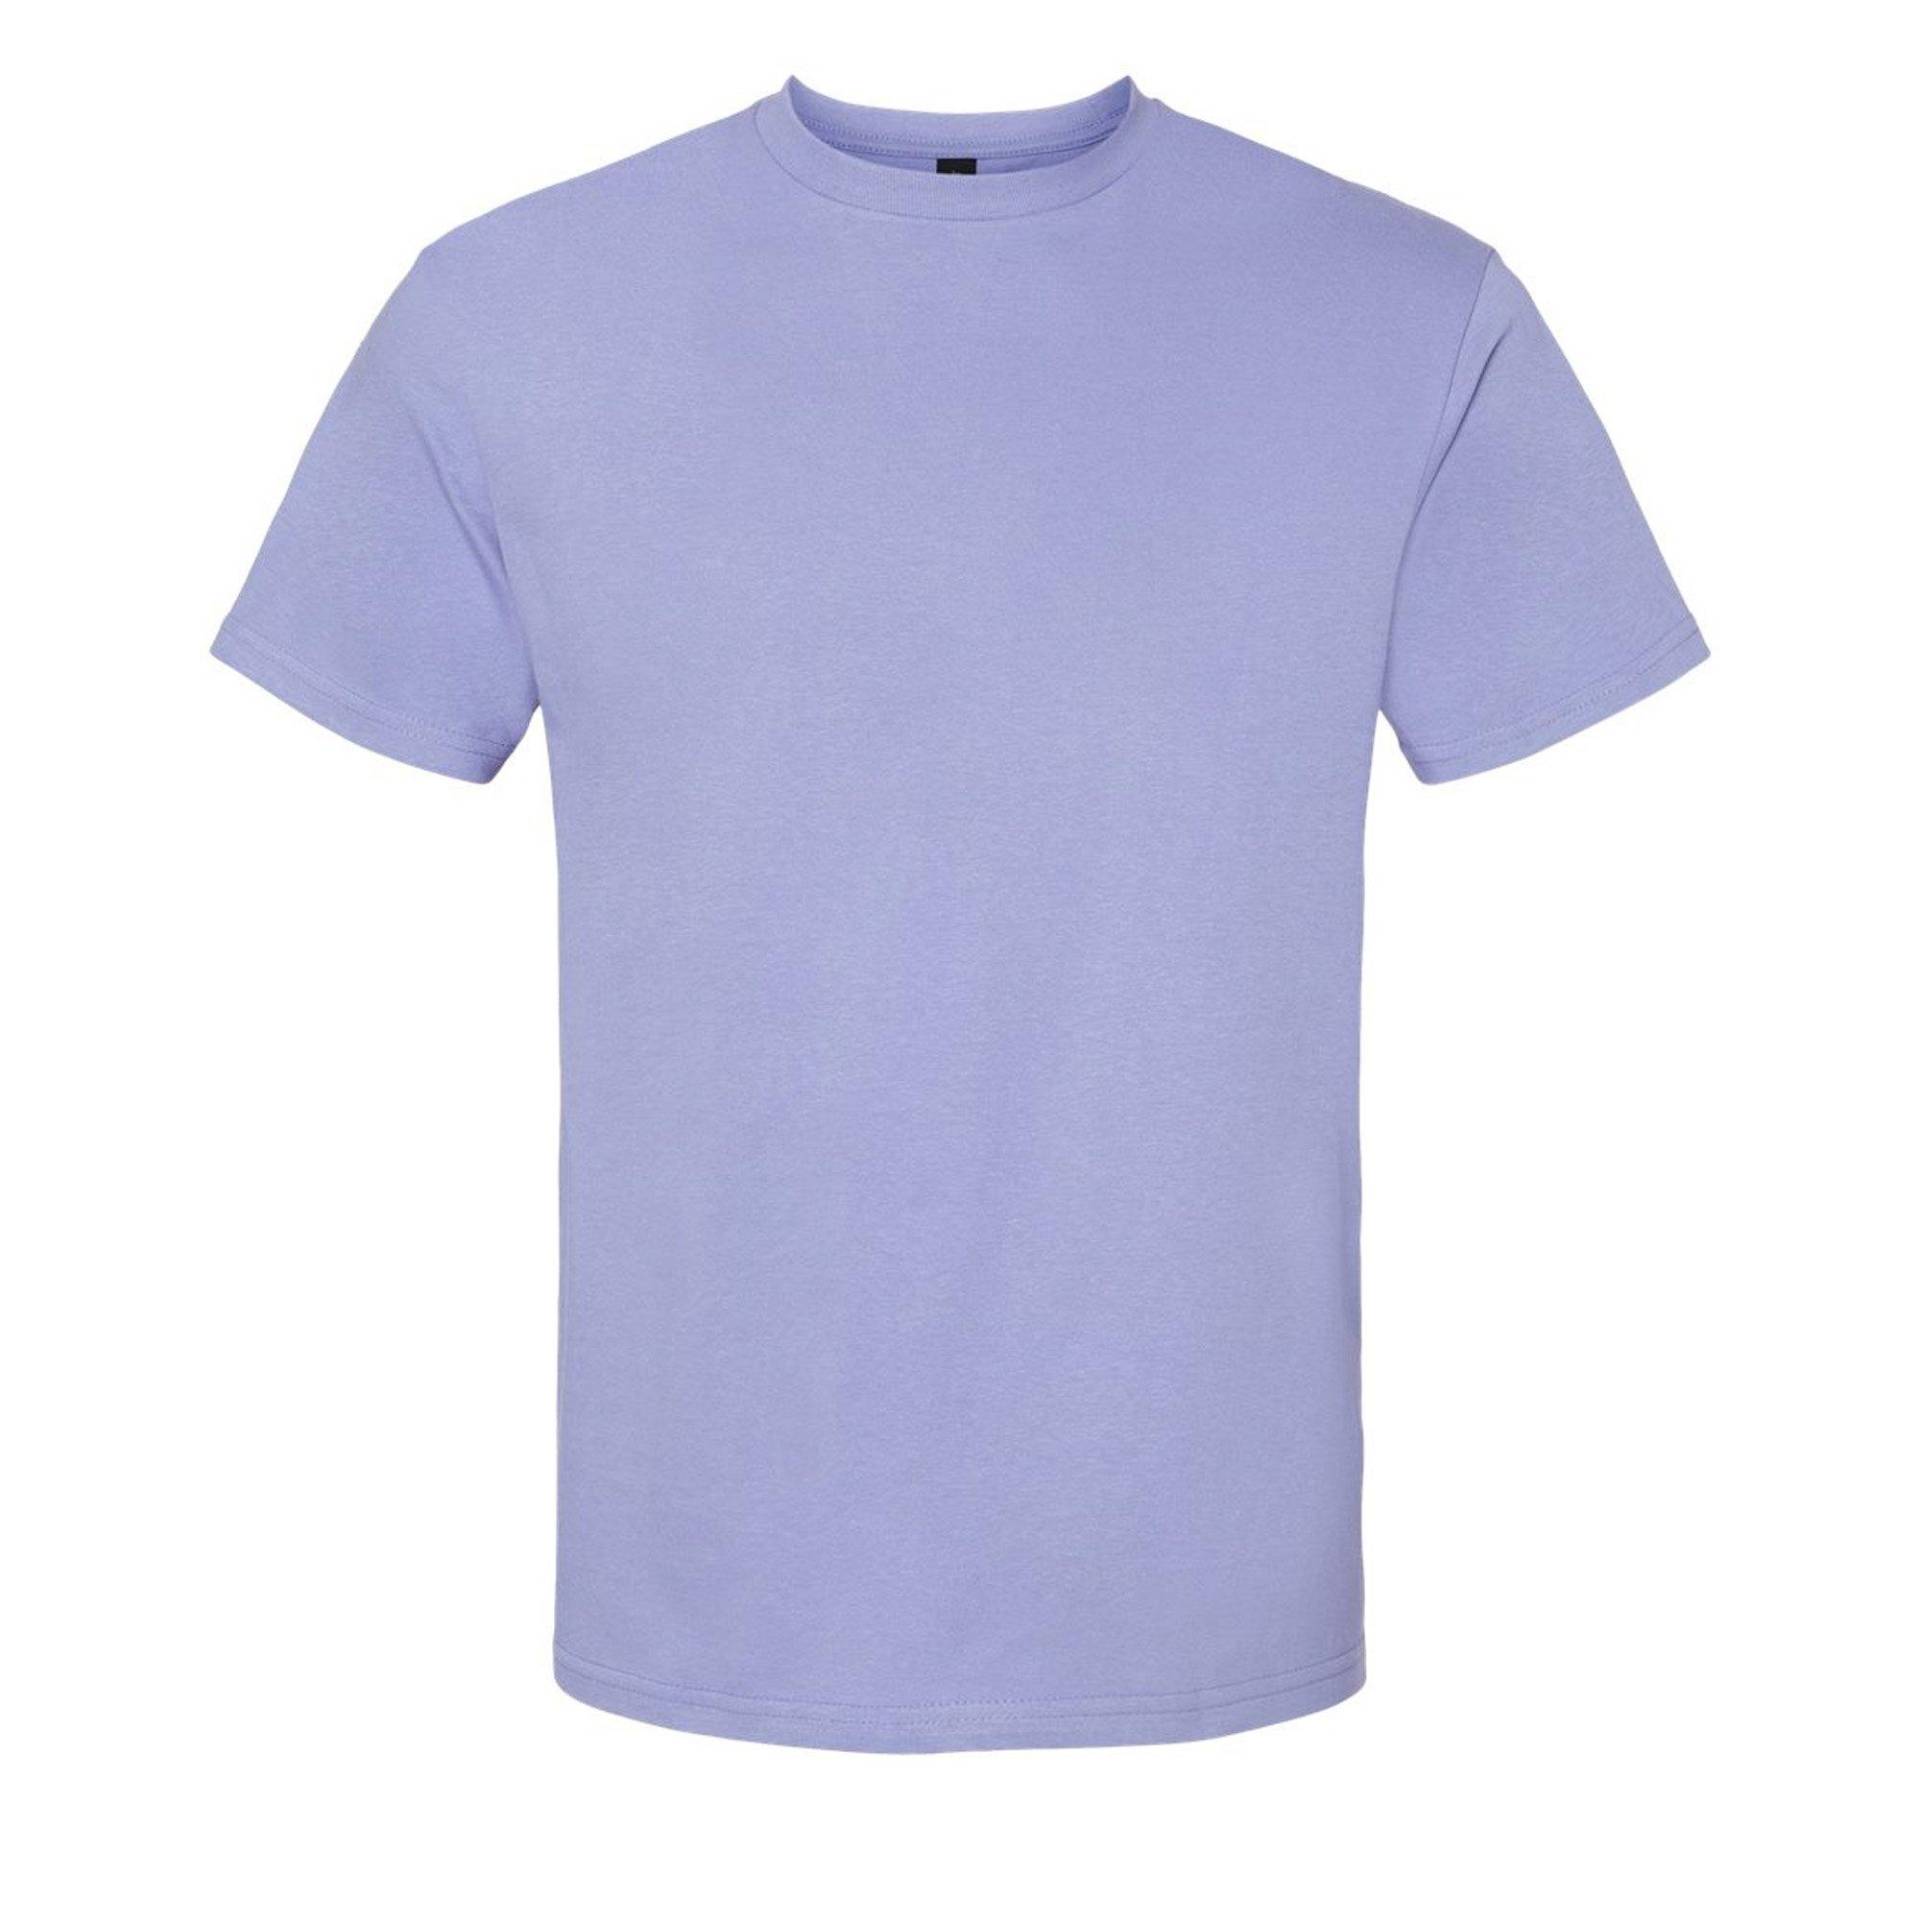 Softstyle Tshirt Damen Violett XL von Gildan